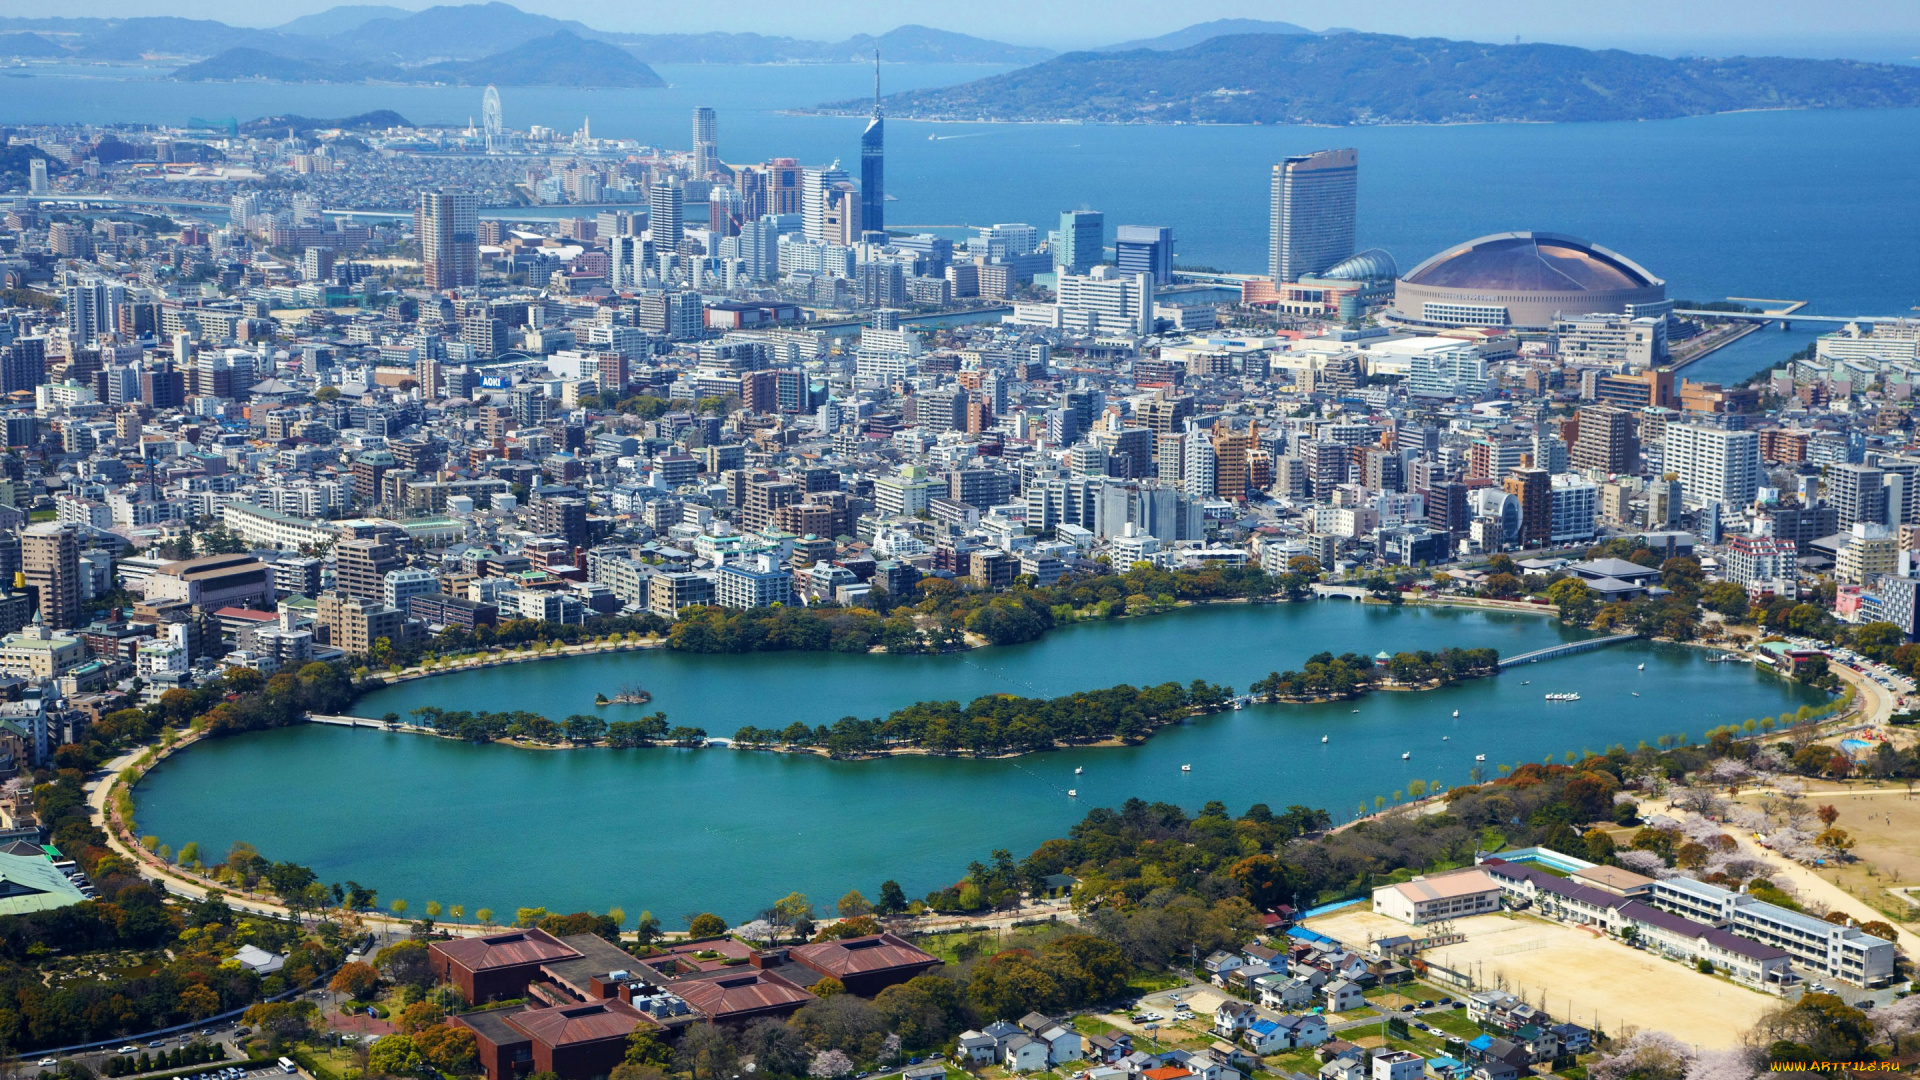 города, -, панорамы, Япония, fukuoka, мегаполис, дома, озеро, побережье, море, панорама, вид, сверху